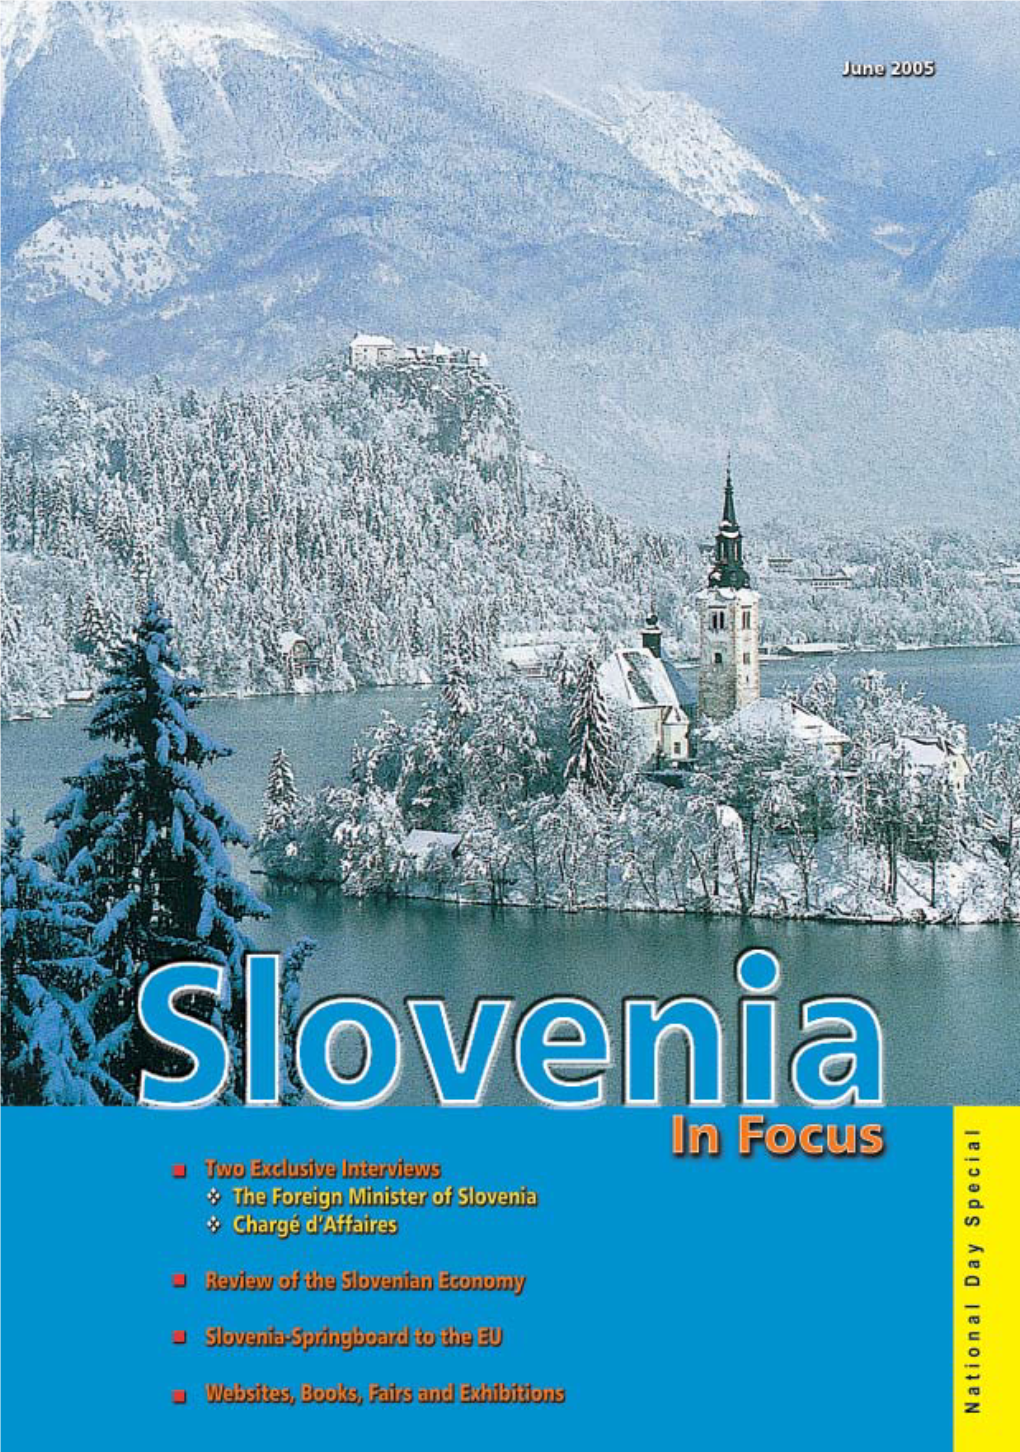 Slovenia in Brief